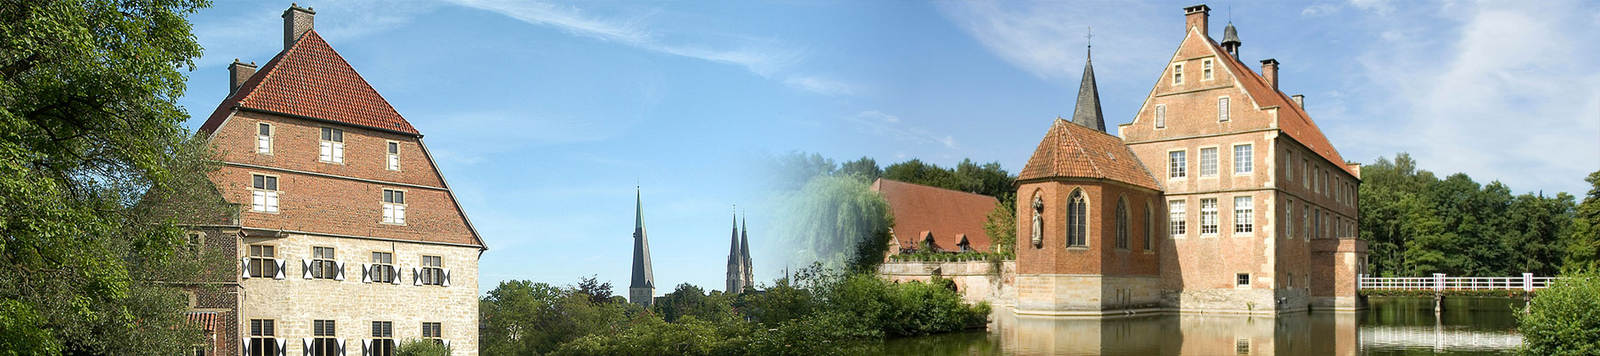 Kolvenburg (Billerbeck) und Burg Hülshoff (Havixbeck)